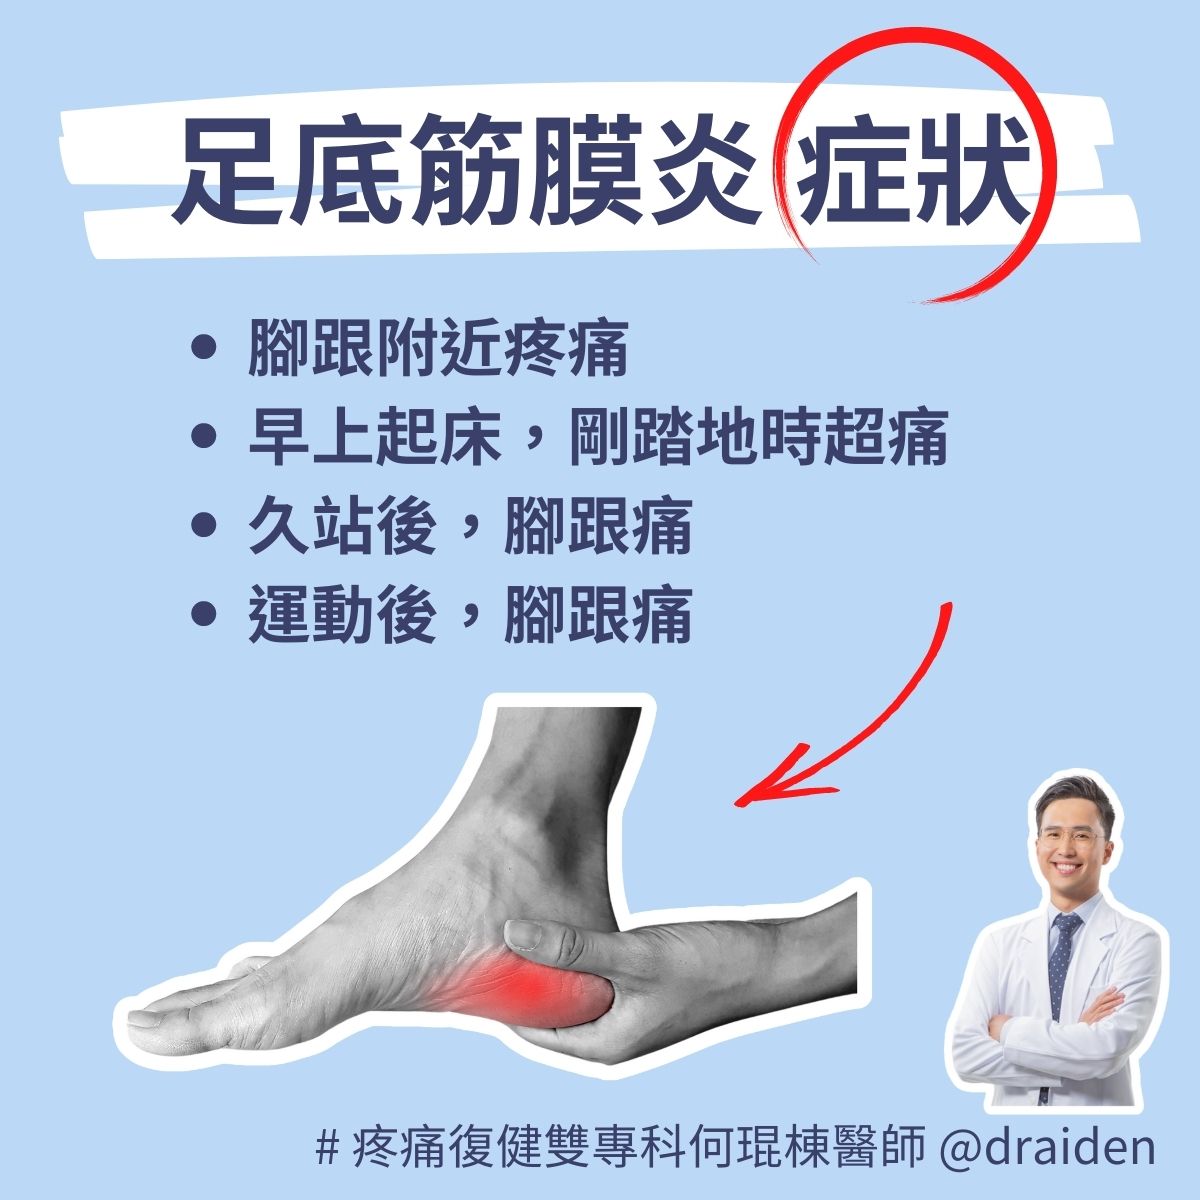 足底筋膜炎的症狀包含腳跟痛、早上起床踩地很痛、運動或久站腳跟痛